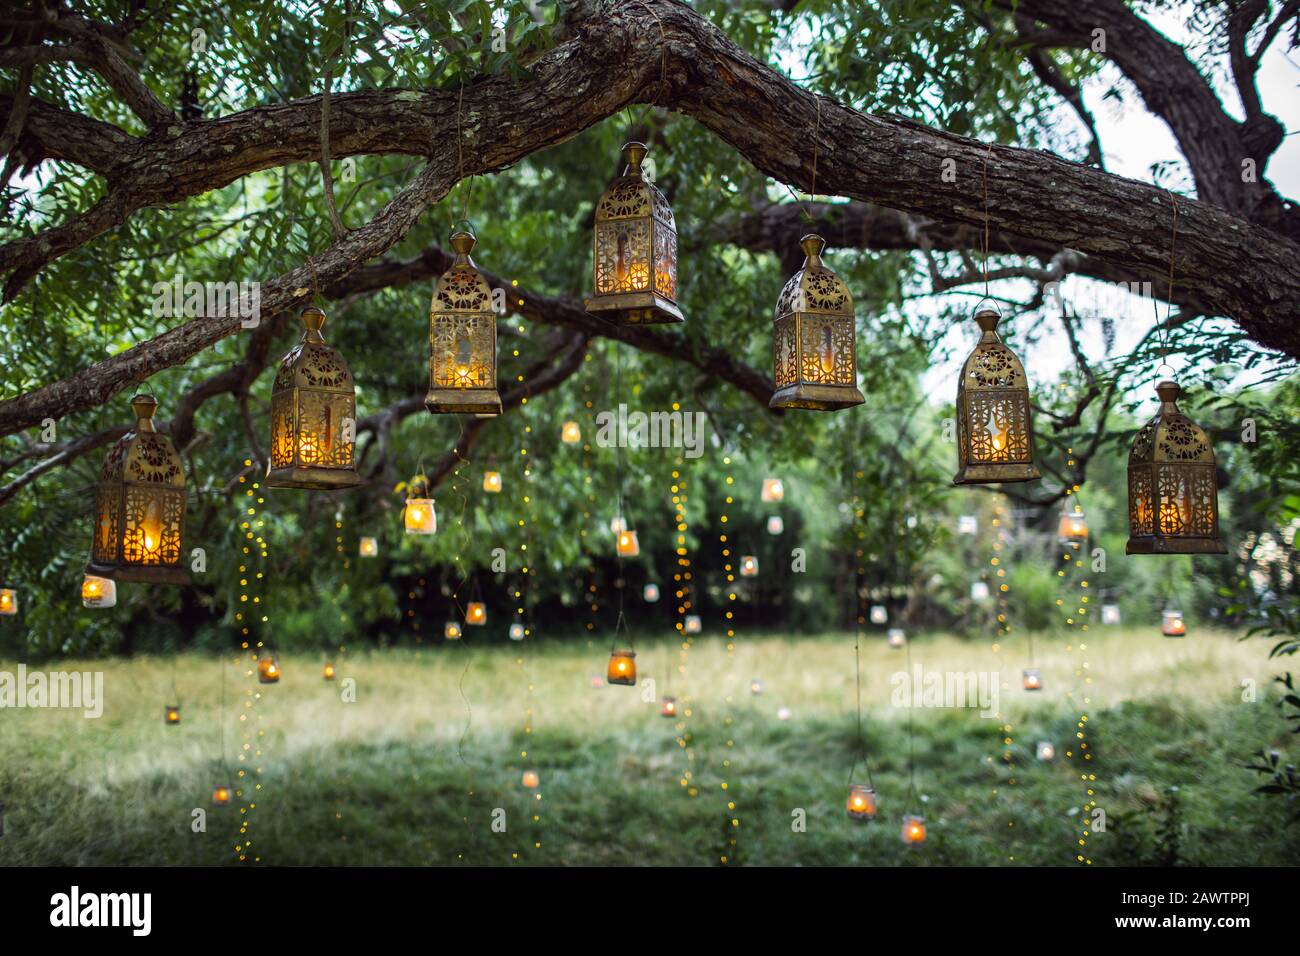 Abendhochzeit mit vielen alten Laternen, Lampen und Kerzen. Ungewöhnliche Dekoration im Freien. Schönes Gartenparty-Konzept. Stockfoto